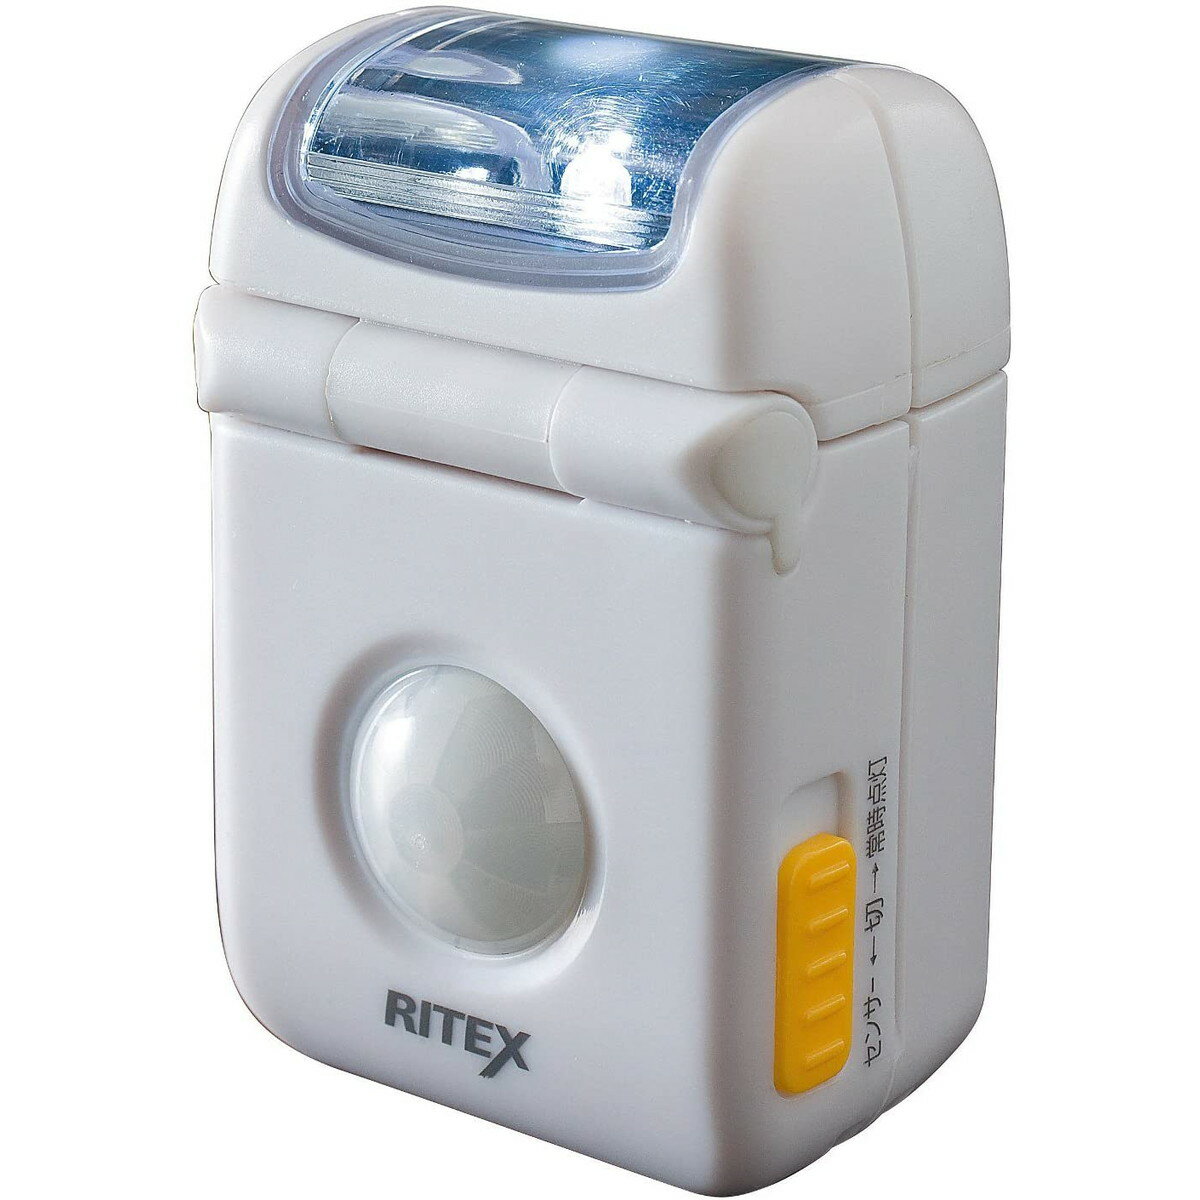 ムサシ RITEX 乾電池式LEDマイクロセンサーライト 防雨型 ASL-010